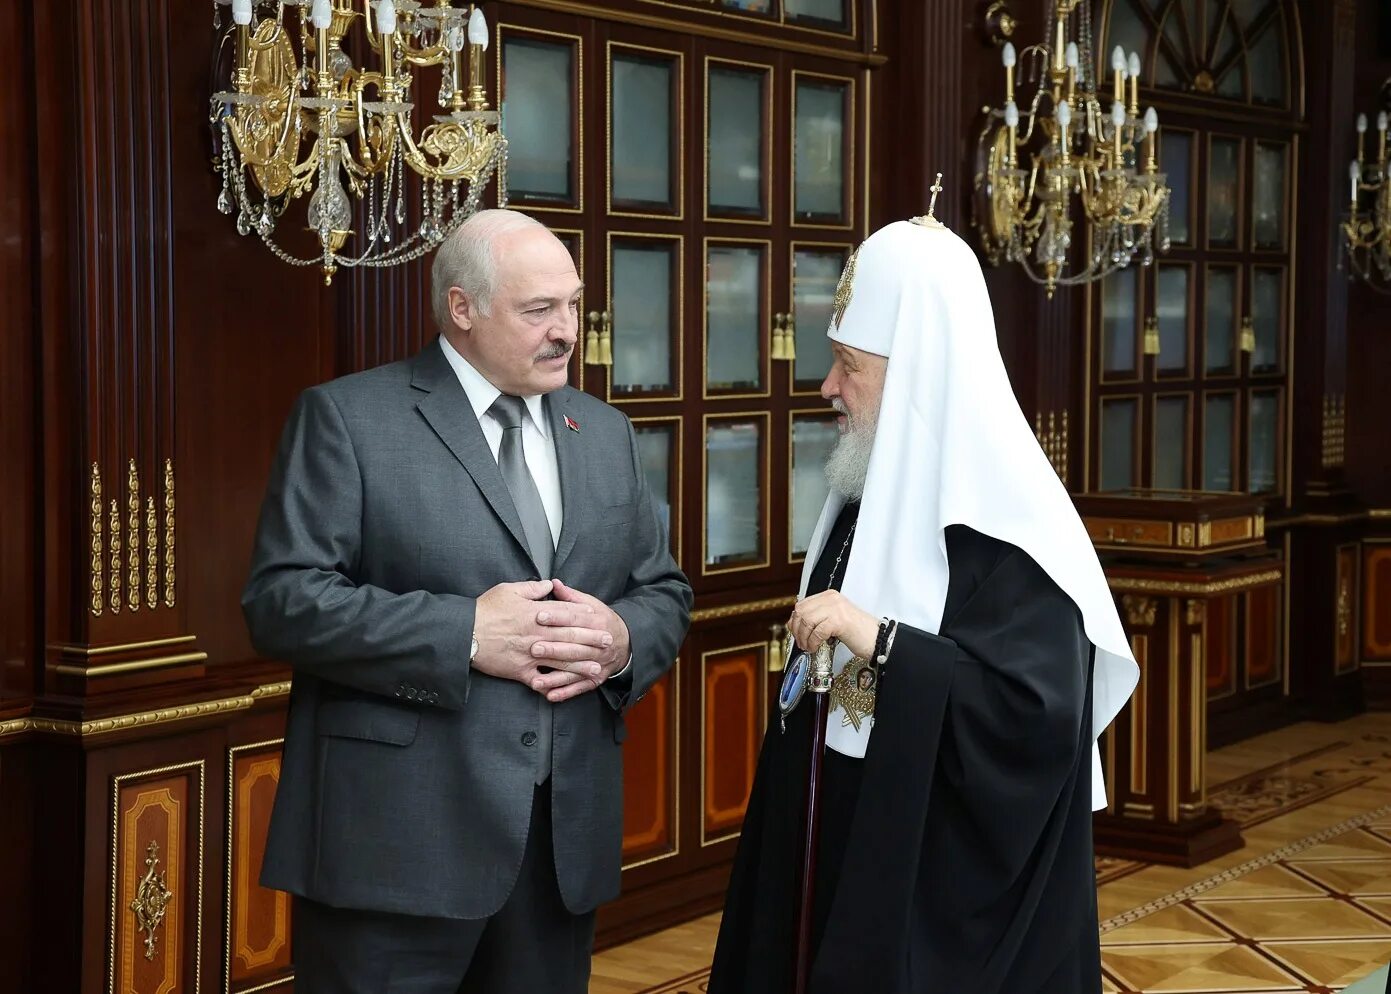 Встреча св. Священный Синод 2022 заседания. Современная православная Церковь.